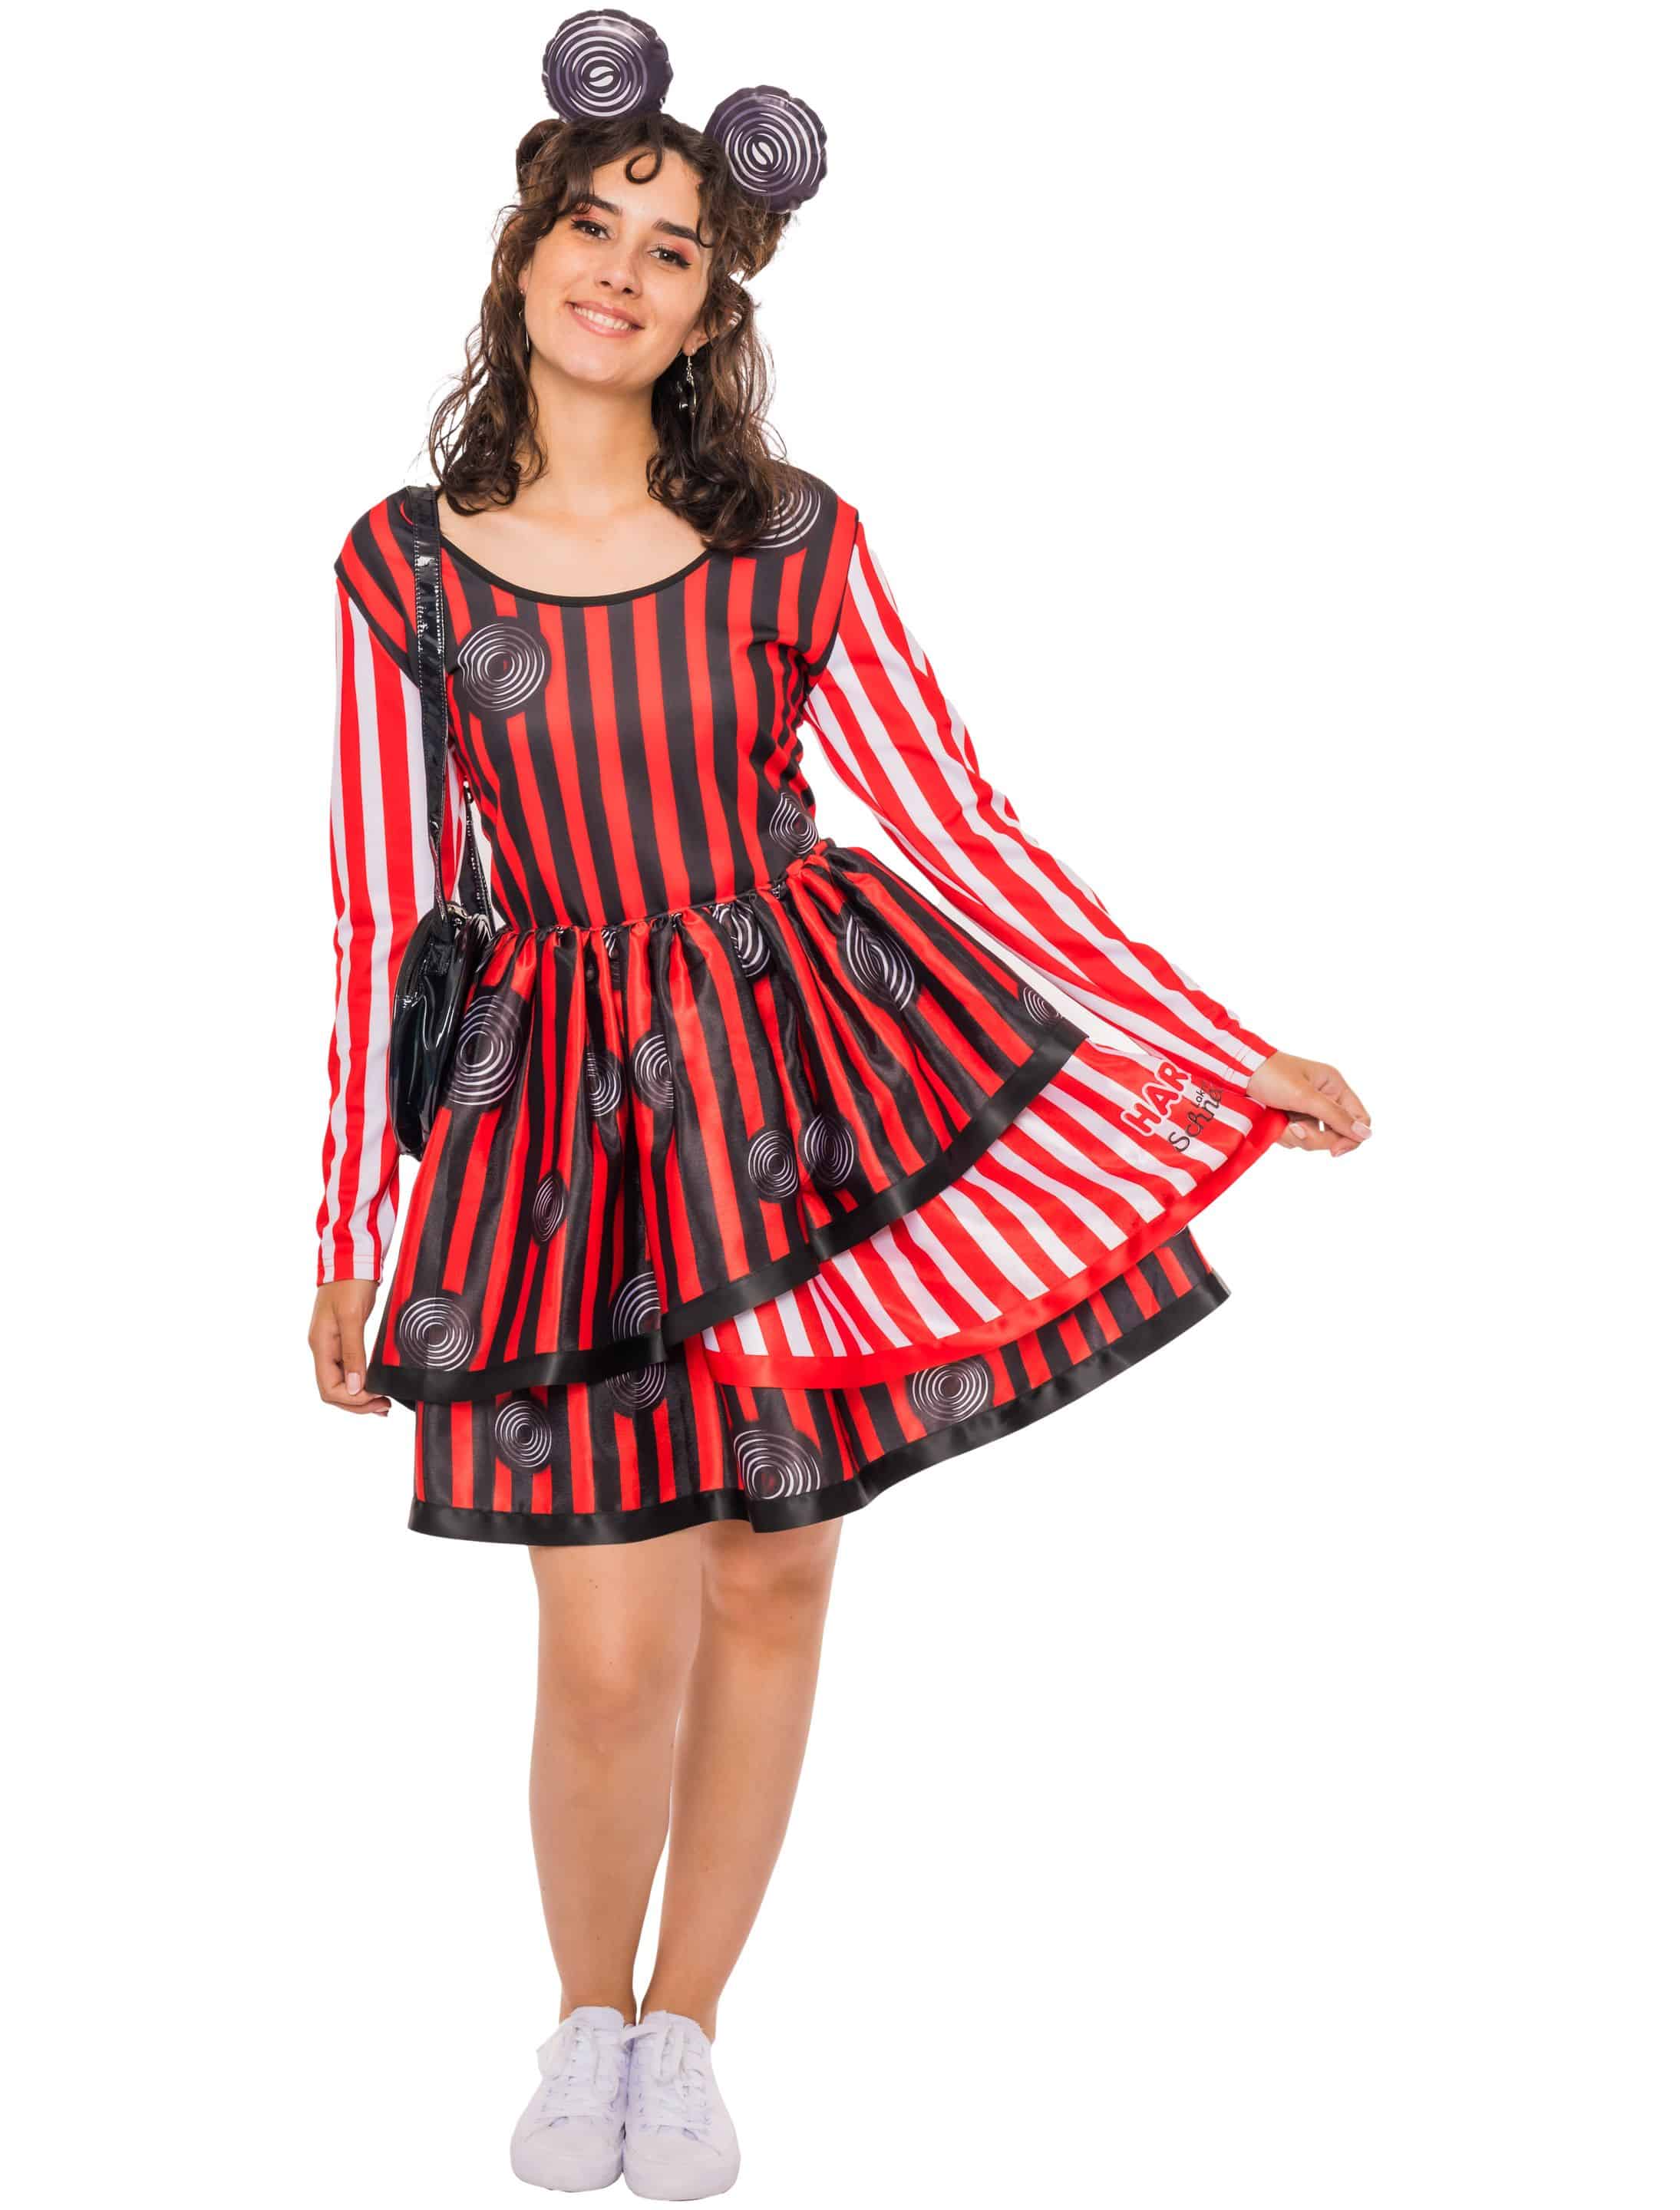 Kleid HARIBO Lakritz Schnecken Damen schwarz/weiß/rot 2XL